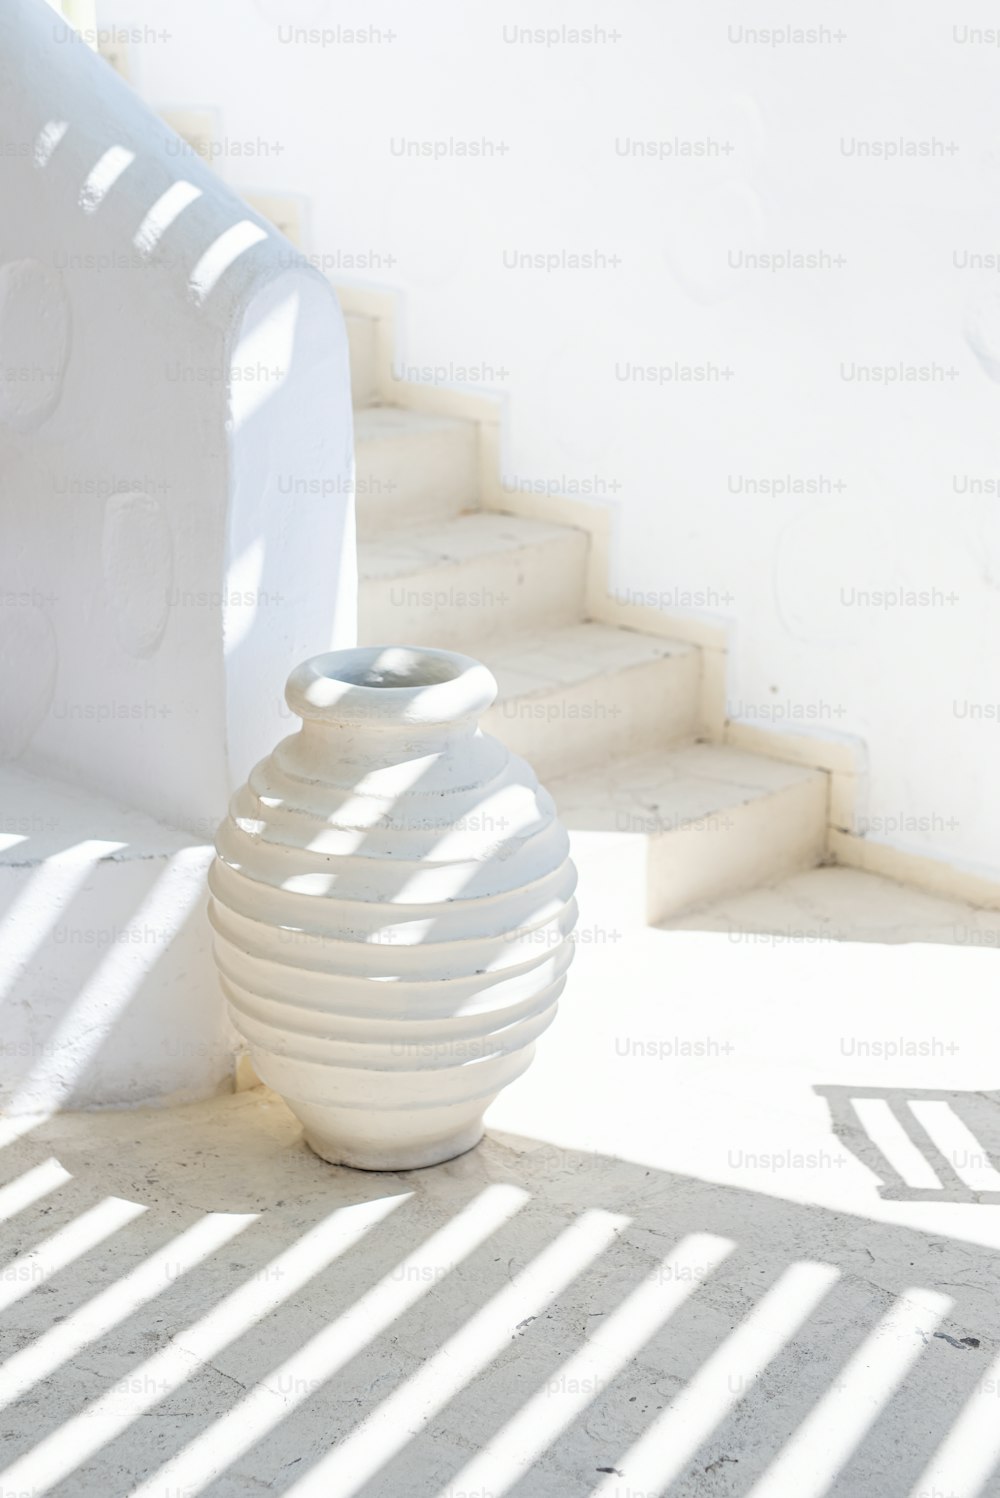 Un jarrón blanco sentado en el suelo junto a unas escaleras